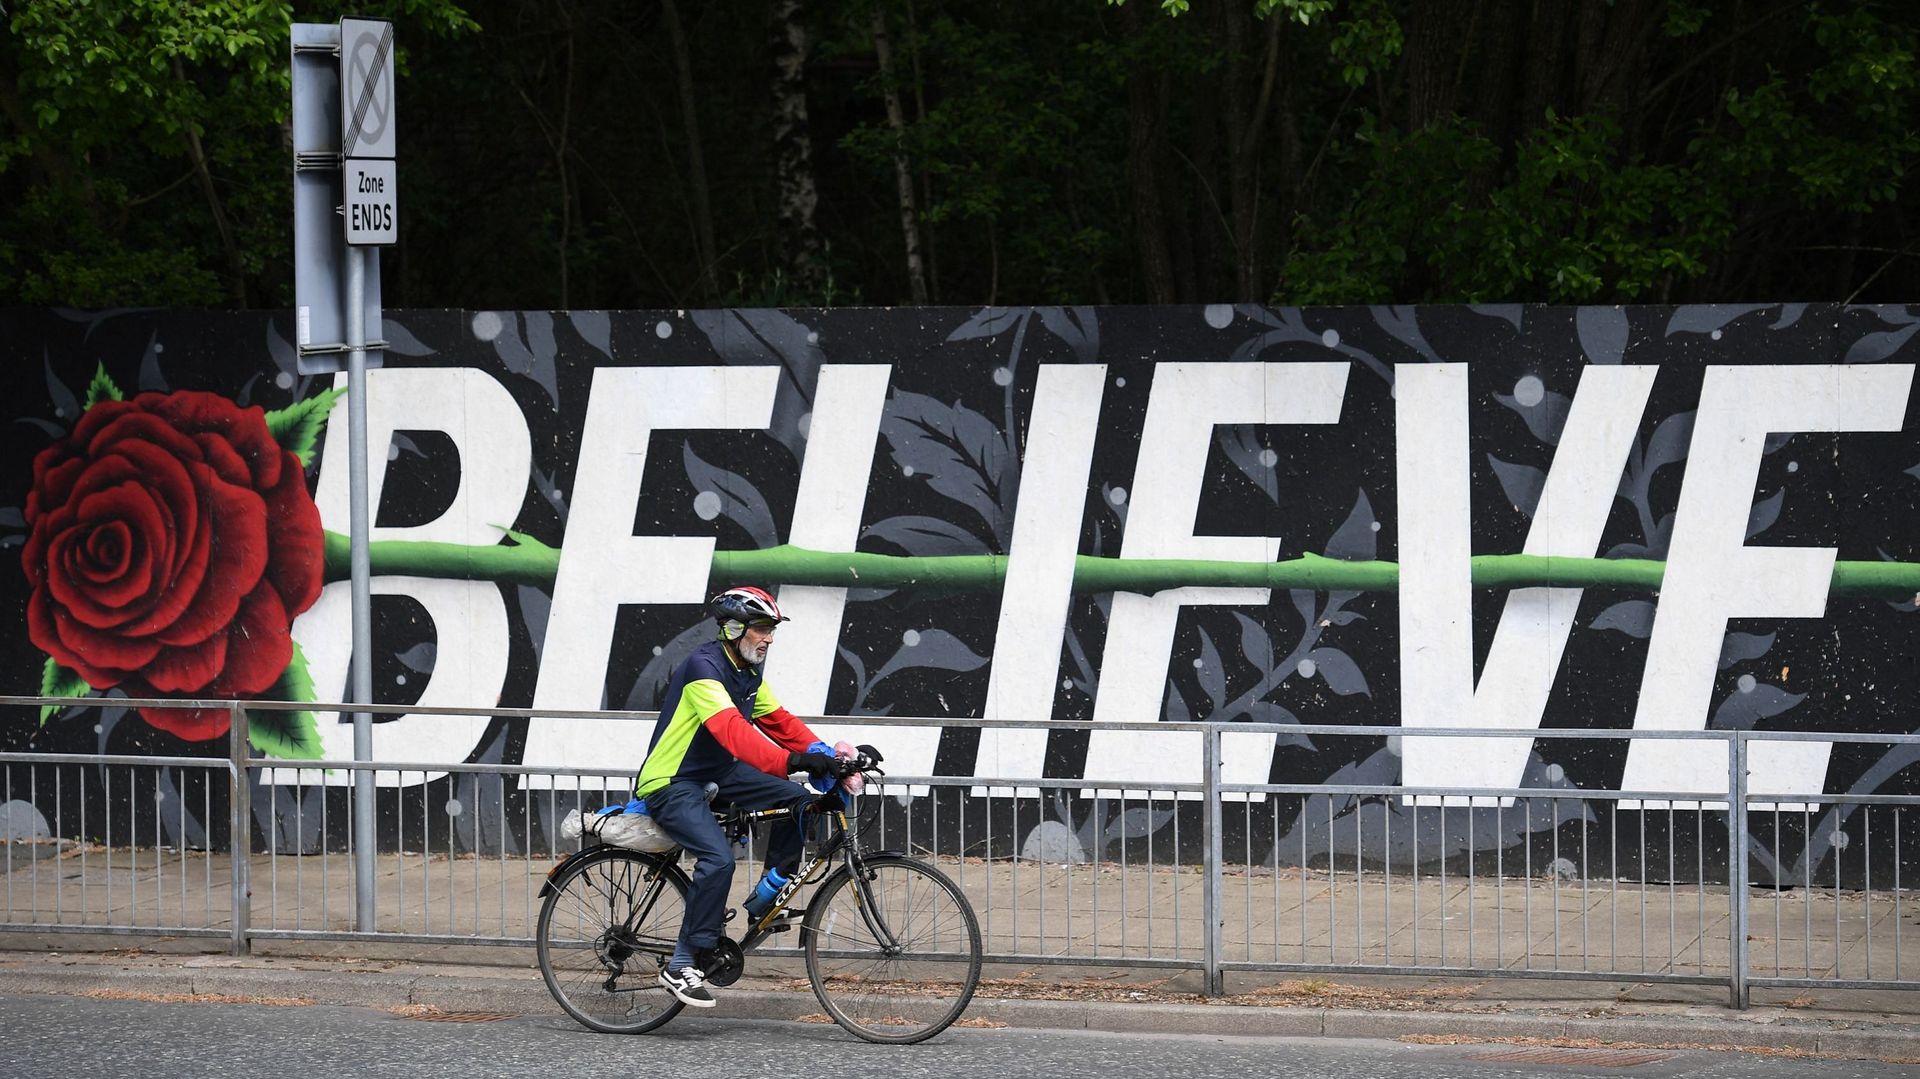 Cycliste devant une fresque représentant une rose (symbole du Lancashire) et le mot "Believe" ("Croire") à Blackburn le 16 juin.